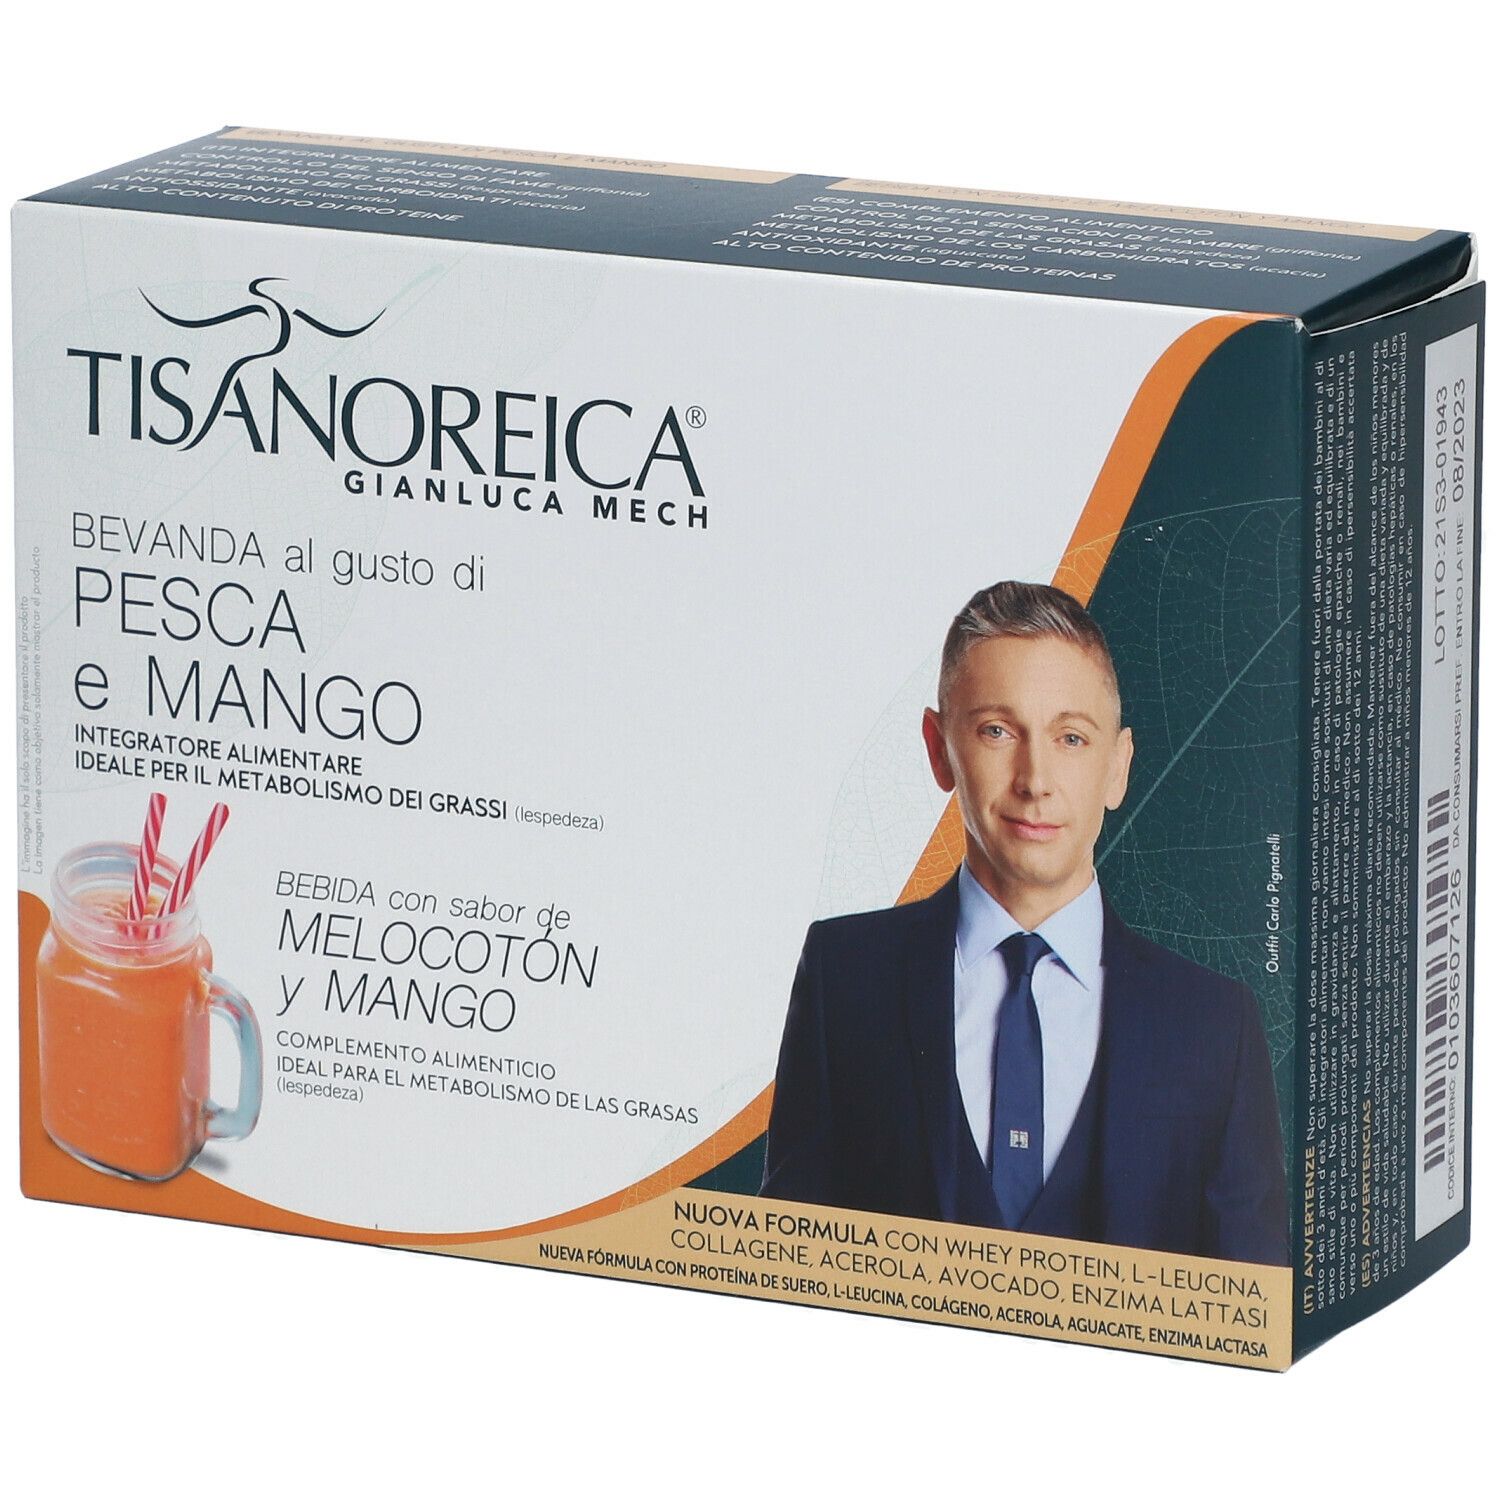 Image of TISANOREICA® Bevanda al gusto di PESCA e MANGO